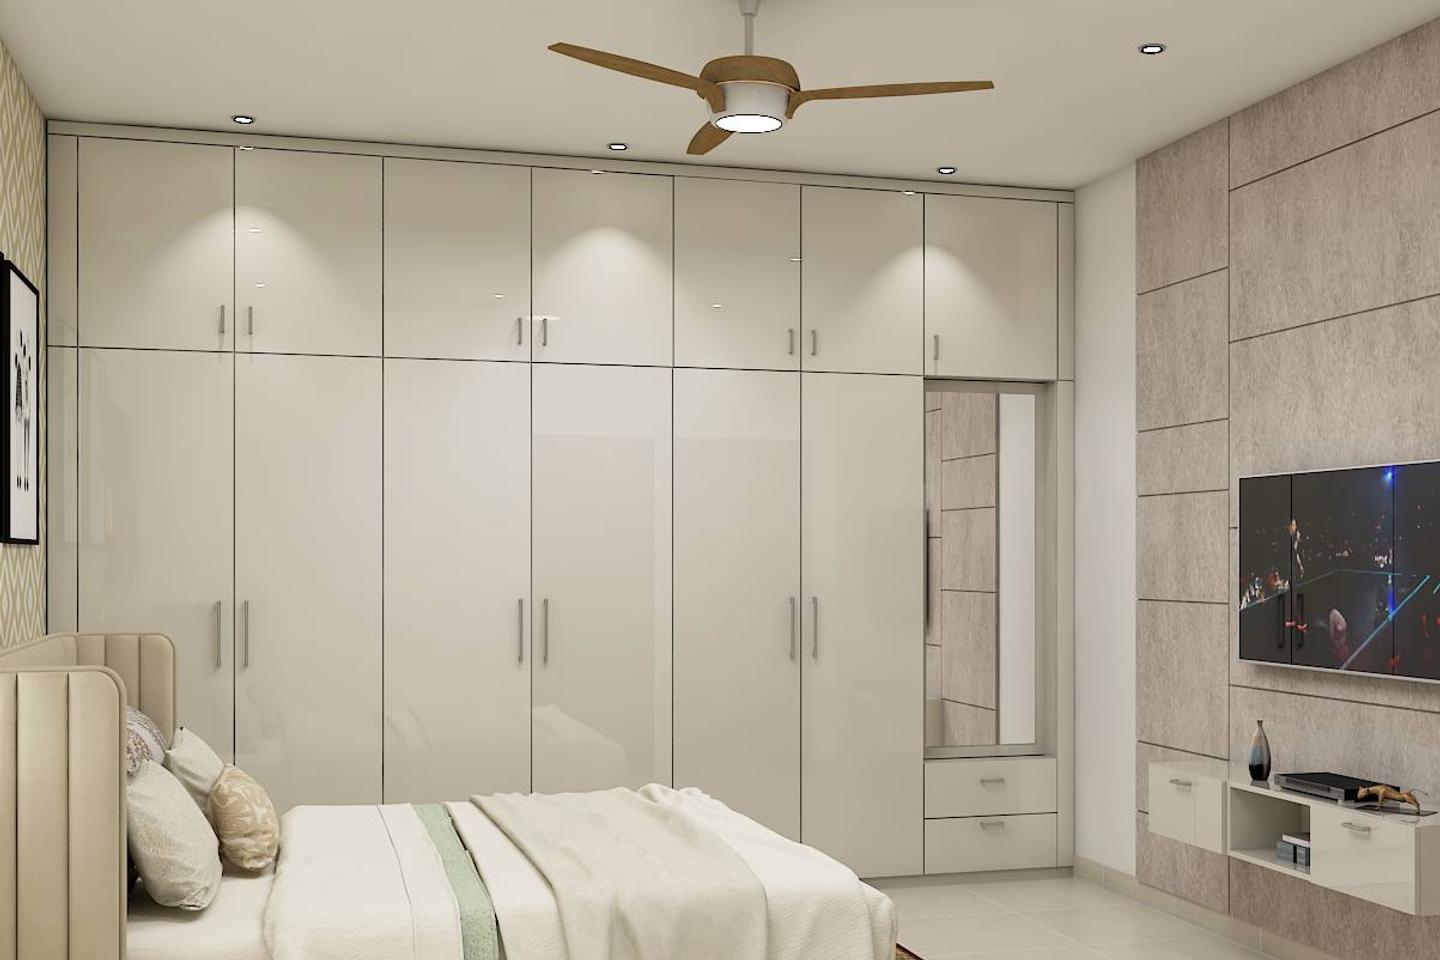 6-Door White Swing Wardrobe Design For Bedrooms - Livspace